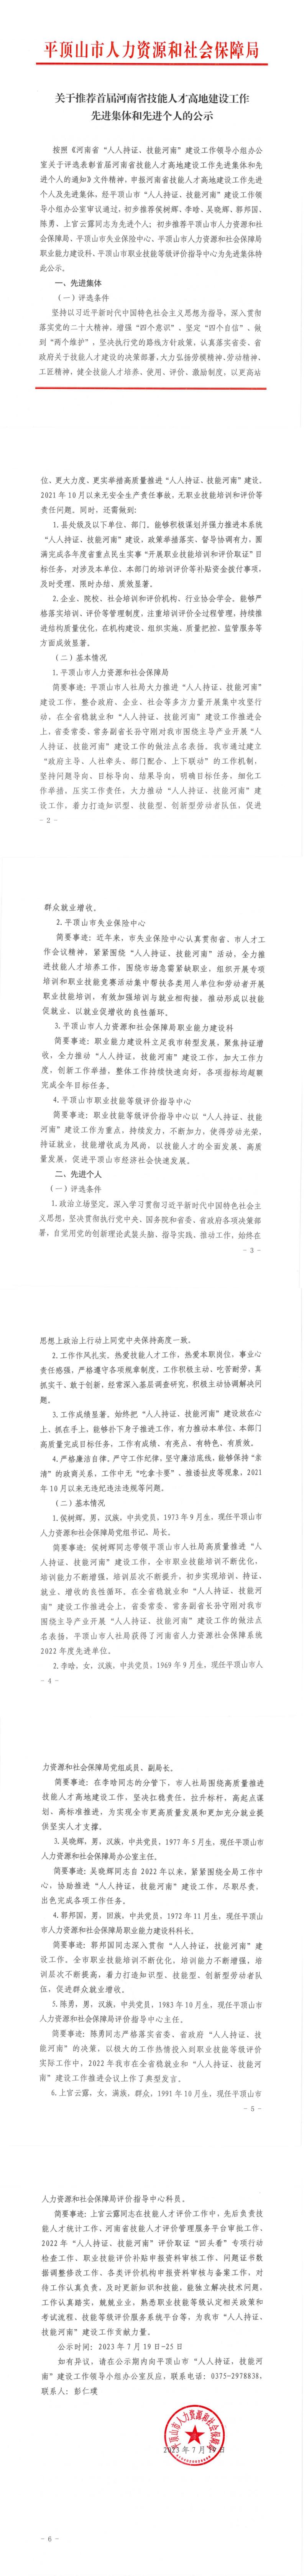 关于推荐首届河南省技能人才高地建设工作先进集体和个人的公示_00.jpg